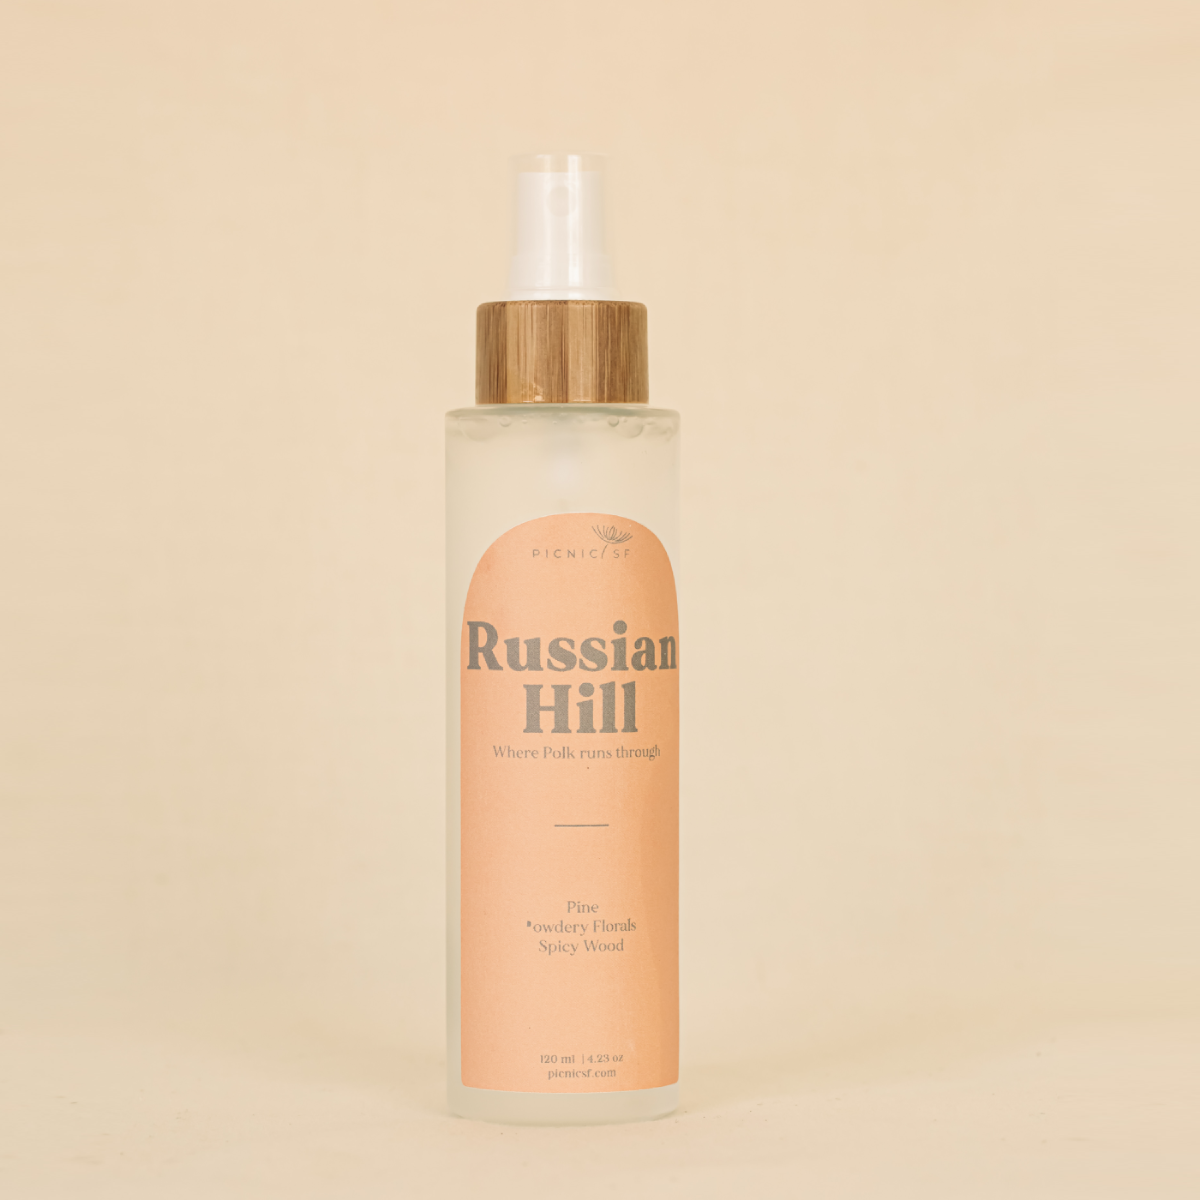 Russian Hill Room Spray - P I C N I C 